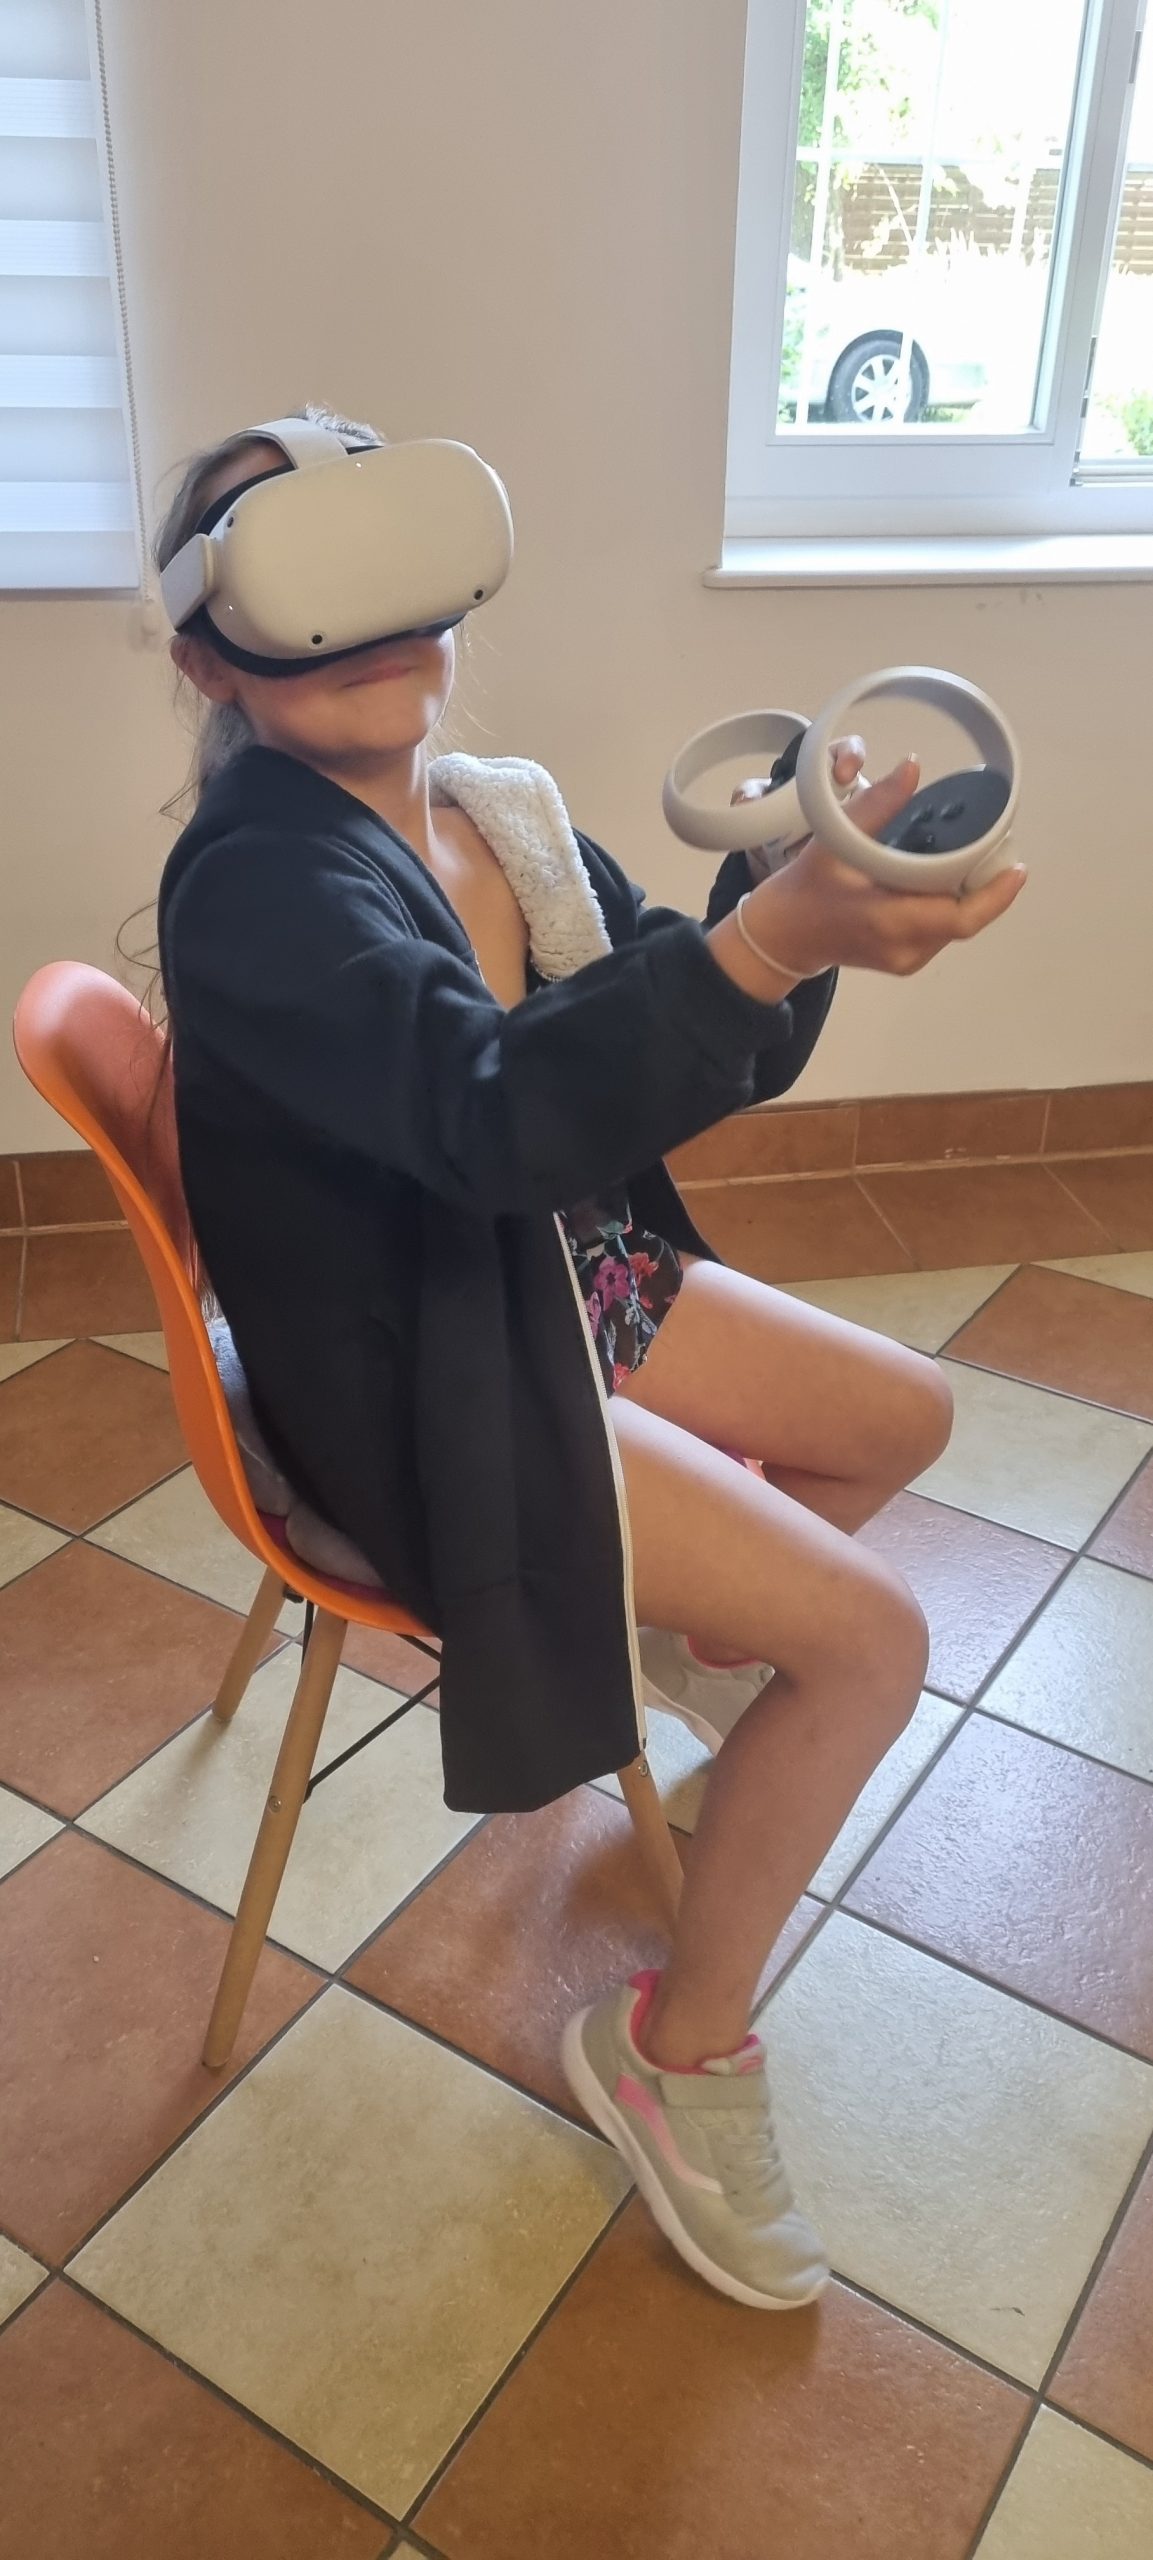 zdjęcie dziewczynki siedzącej na krześle w pracowni orange z założonymi goglami VR podczas opanowywania podstaw korzystanie ze sprzętu